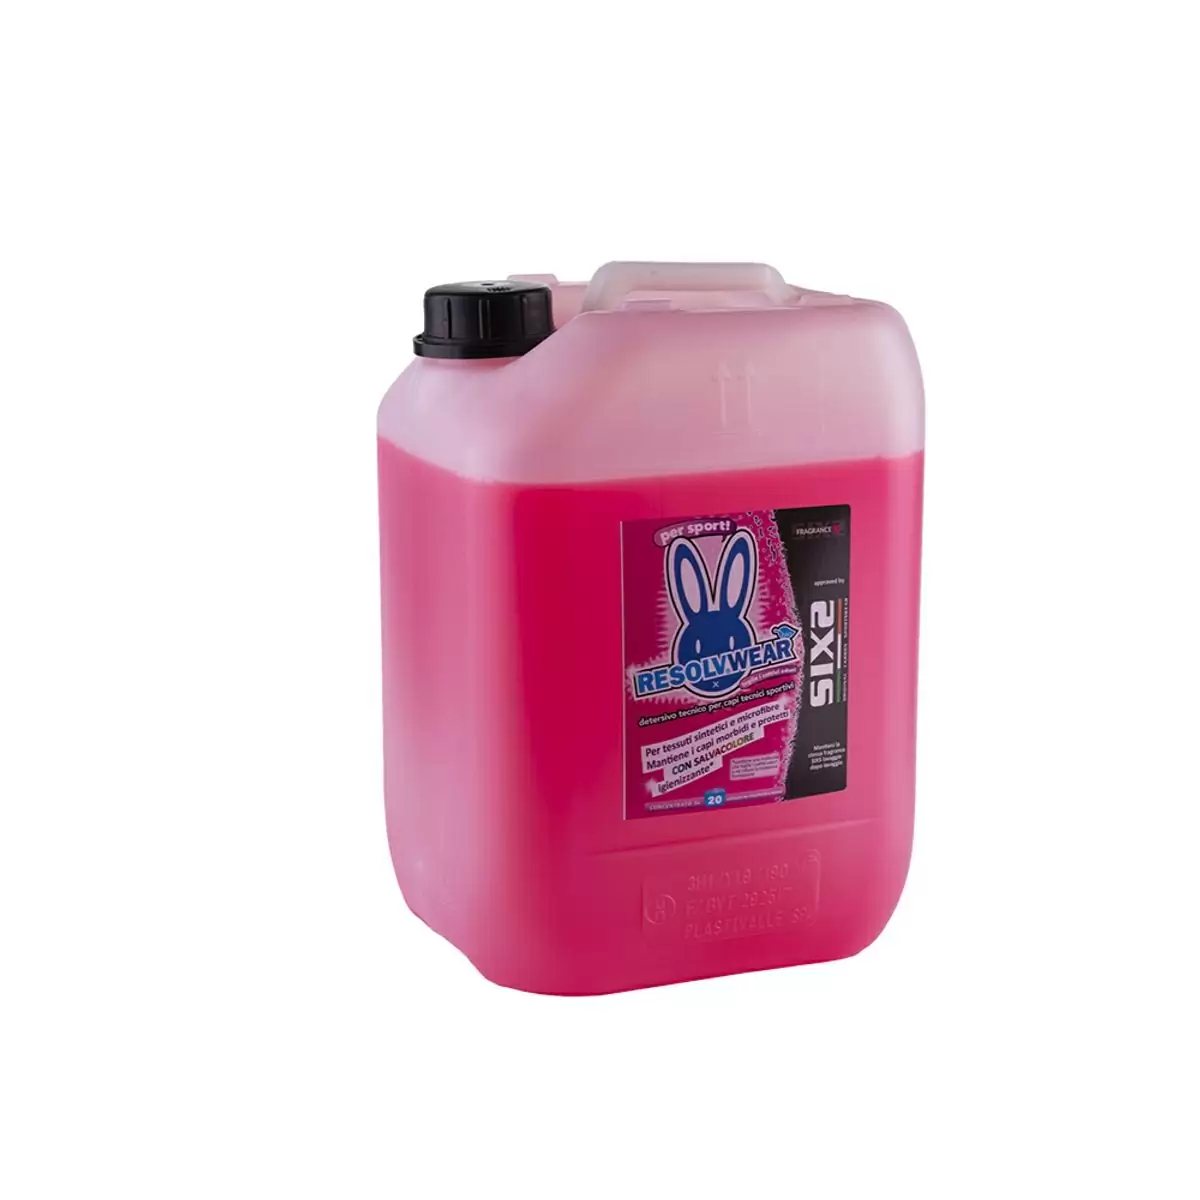 Fragrance X ResolvWear Waschmittel für technische Sportbekleidung 20L - image